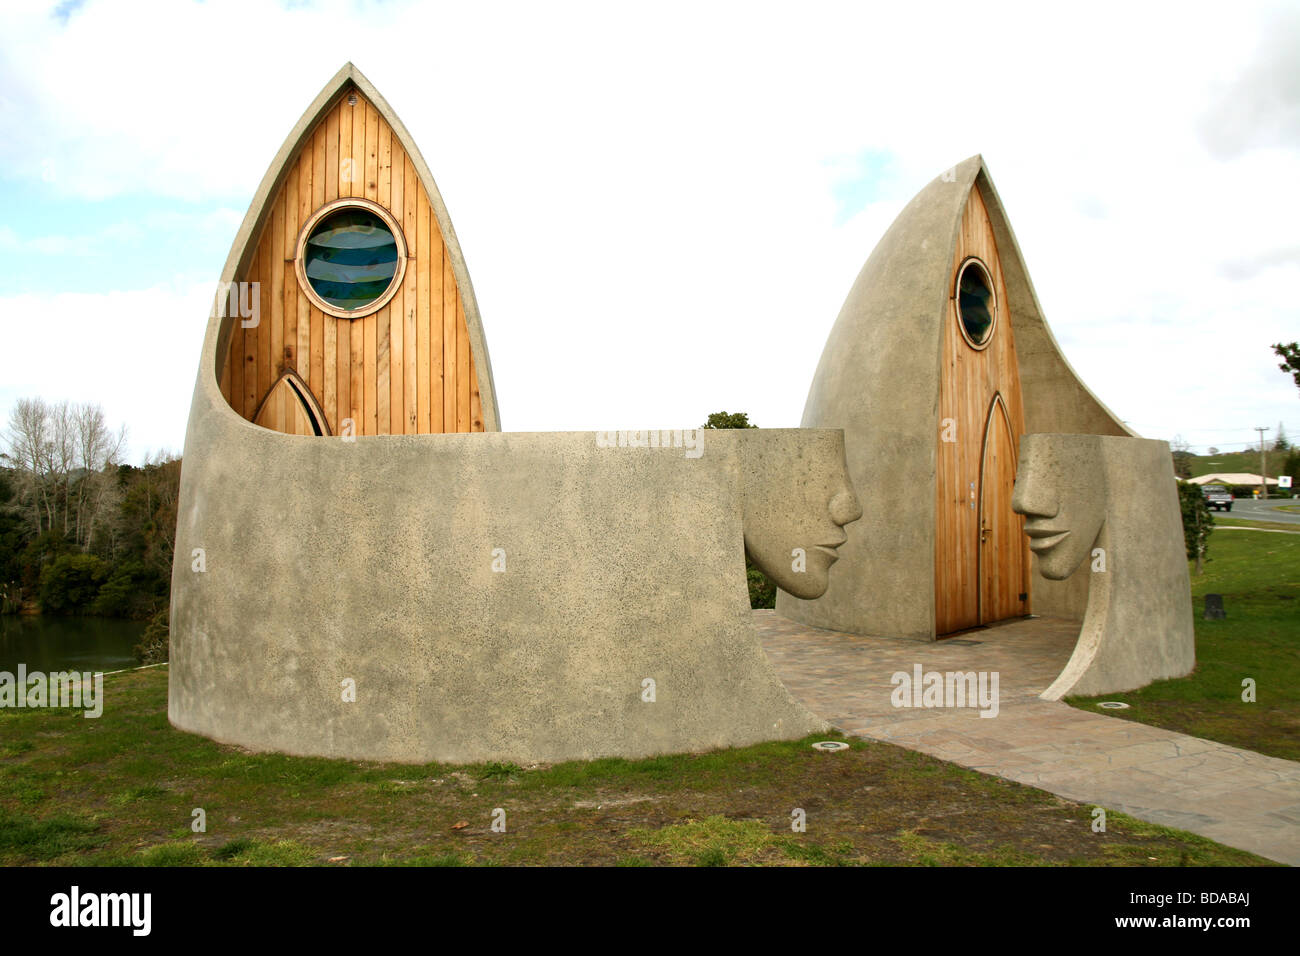 Architekt entwarf öffentliche Toiletten in Neuseeland Stockfoto